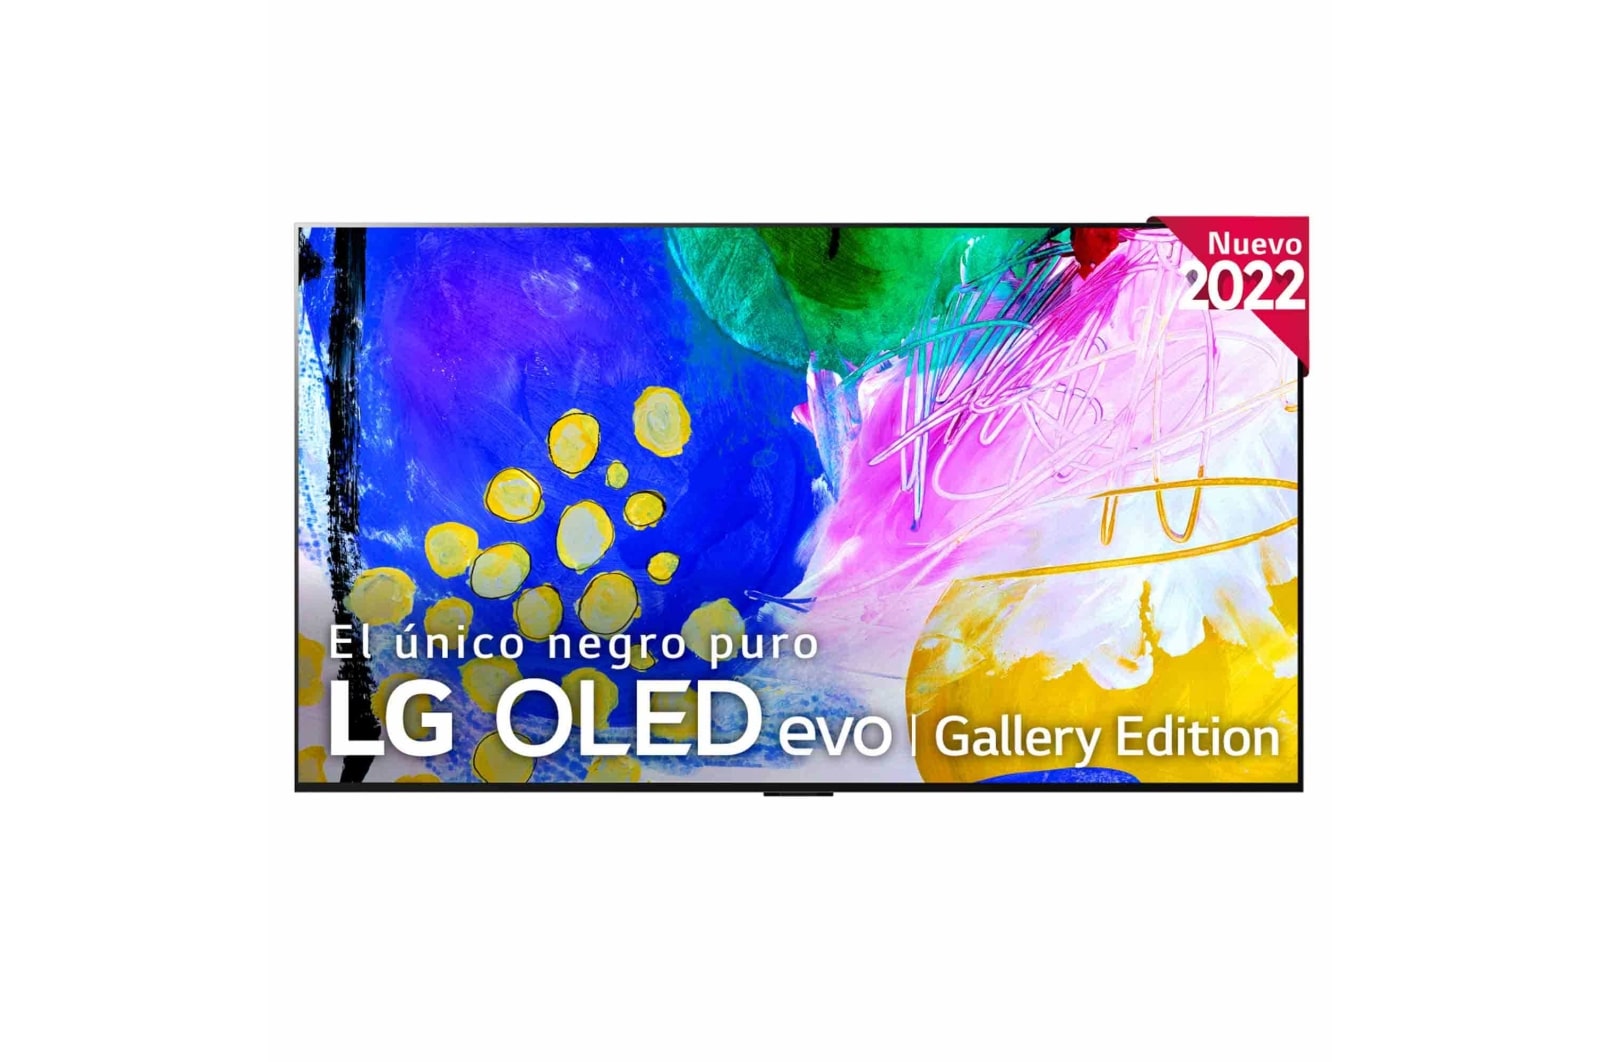 LG Televisor LG 4K OLED evo Gallery Edition, Procesador Inteligente de Máxima Potencia 4K a9 Gen 5 con IA, compatible con el 100% de formatos HDR, HDR Dolby Vision, Dolby Atmos, Smart TV webOS22, el mejor TV para Gaming.<br>Ideal para colgar en la pared., Imagen del televisor OLED83G26LA, OLED83G26LA